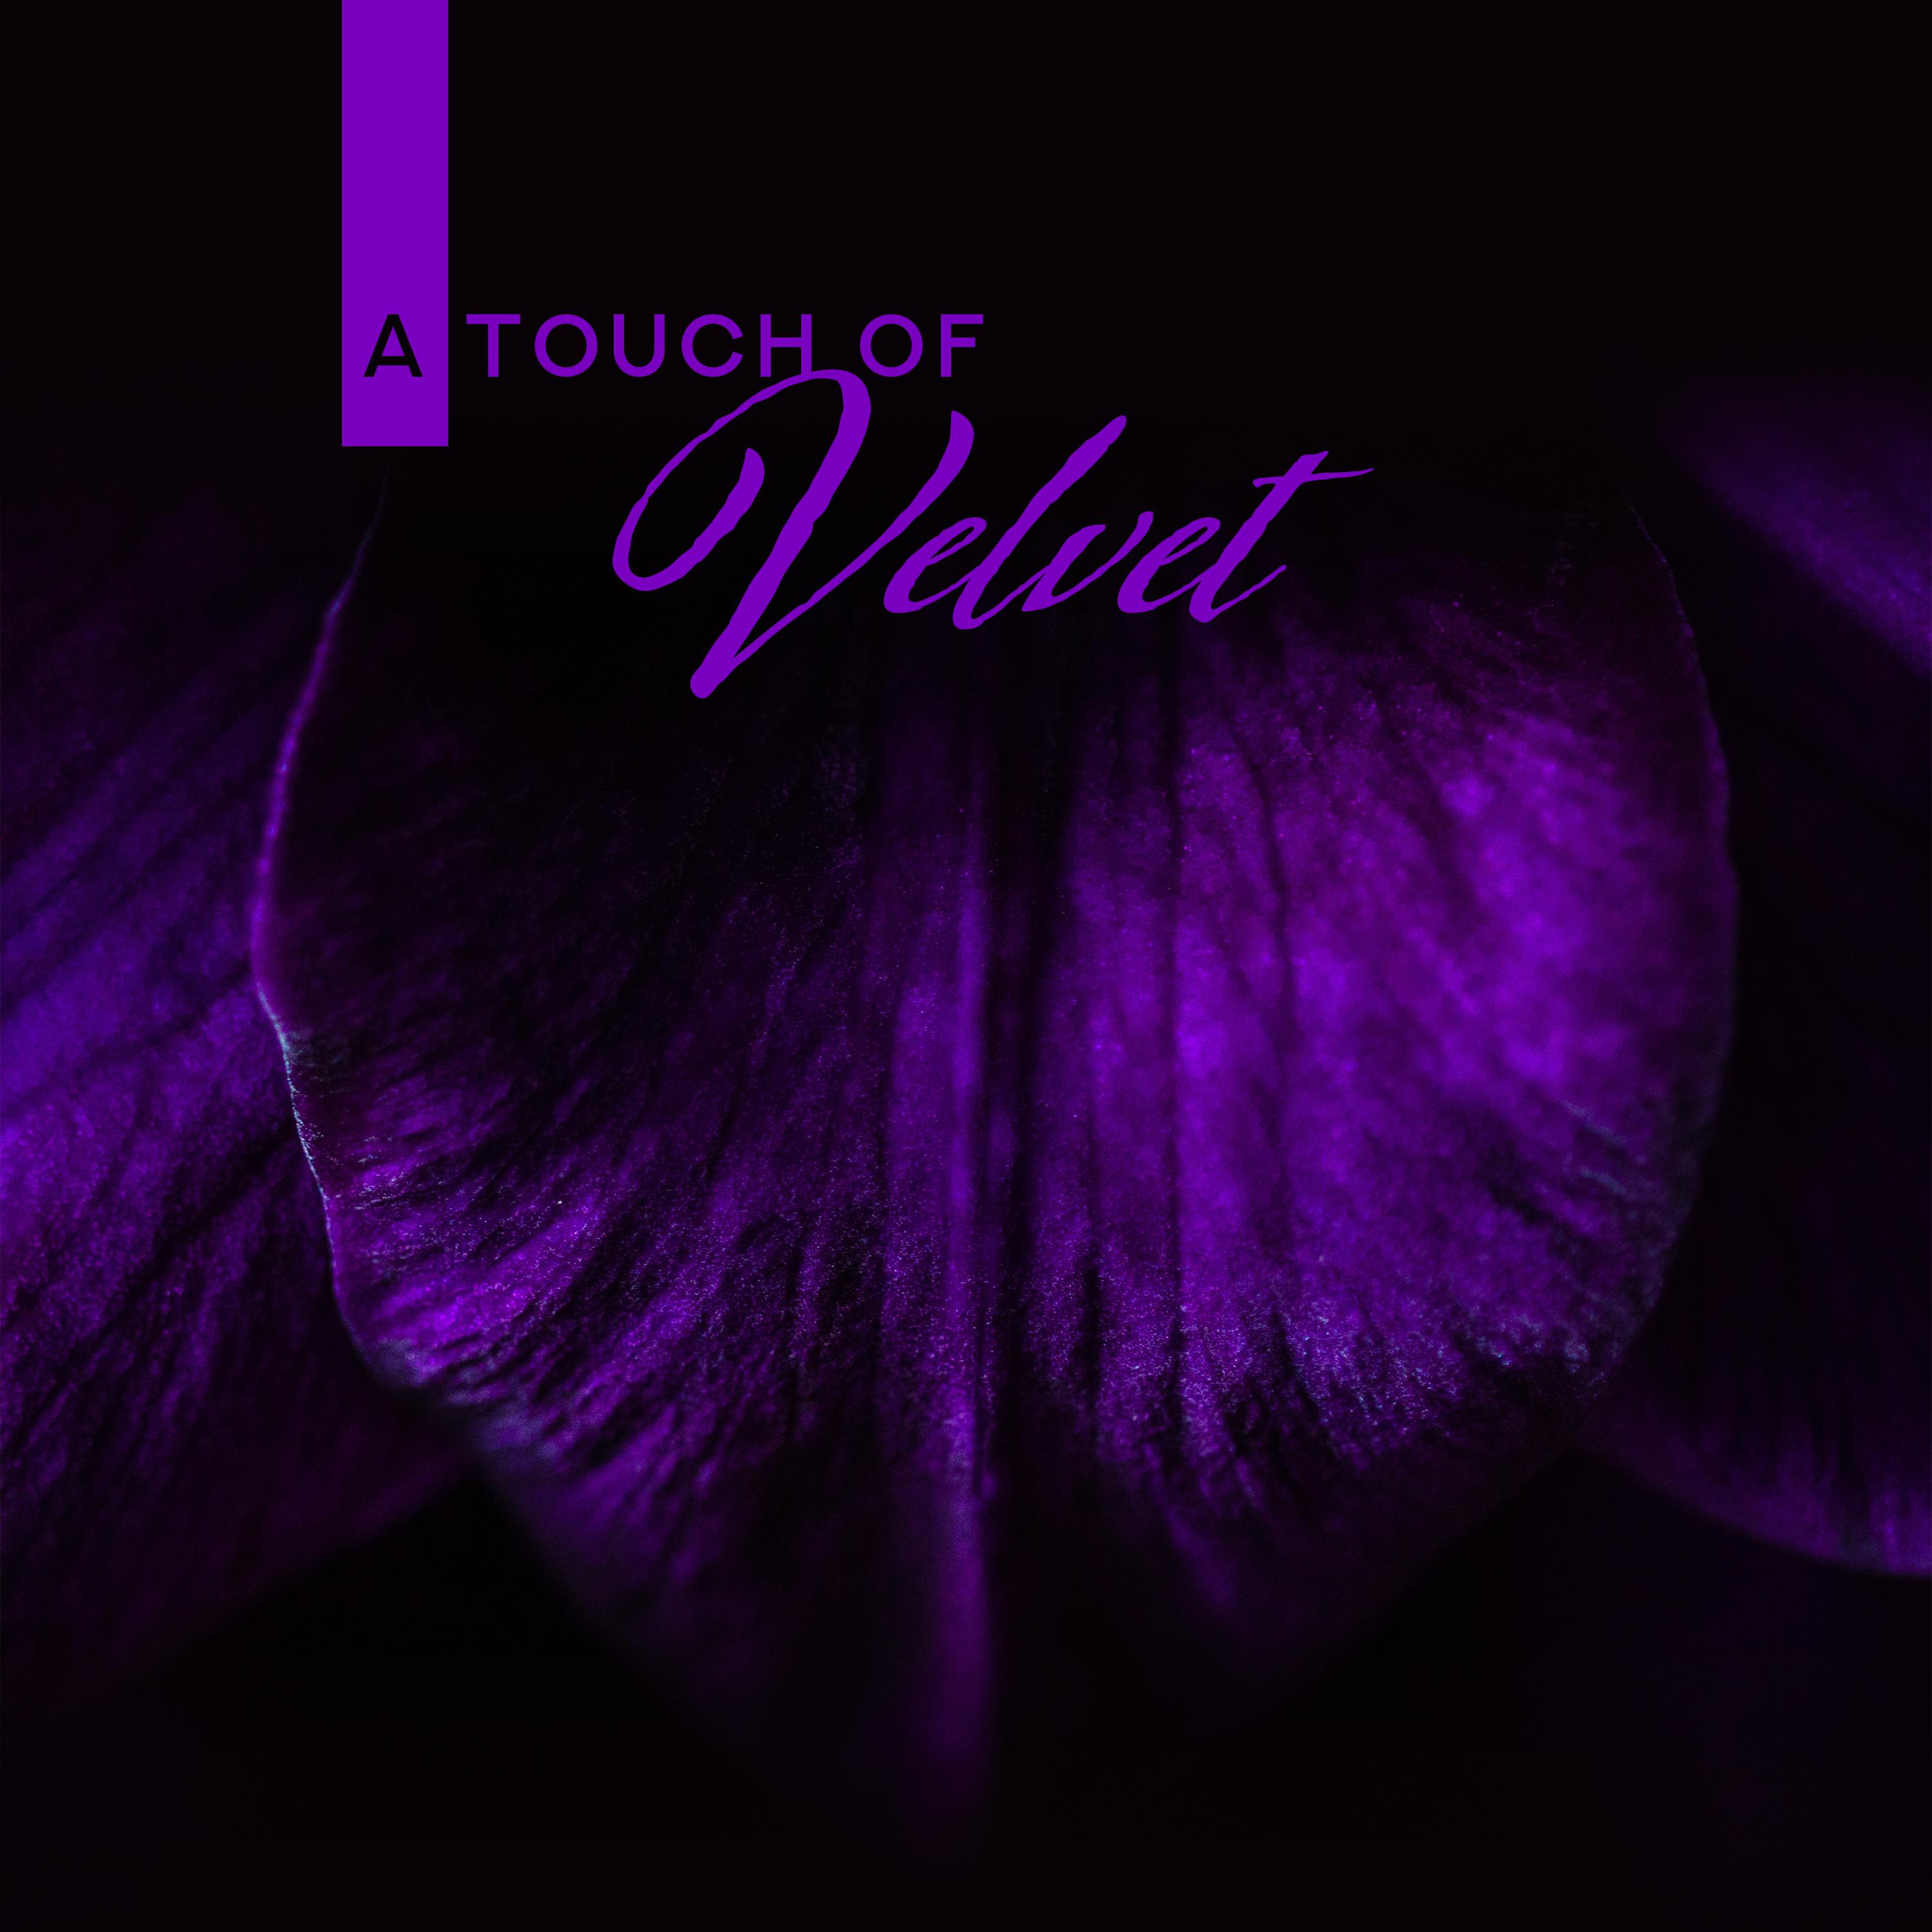 A Touch of Velvet